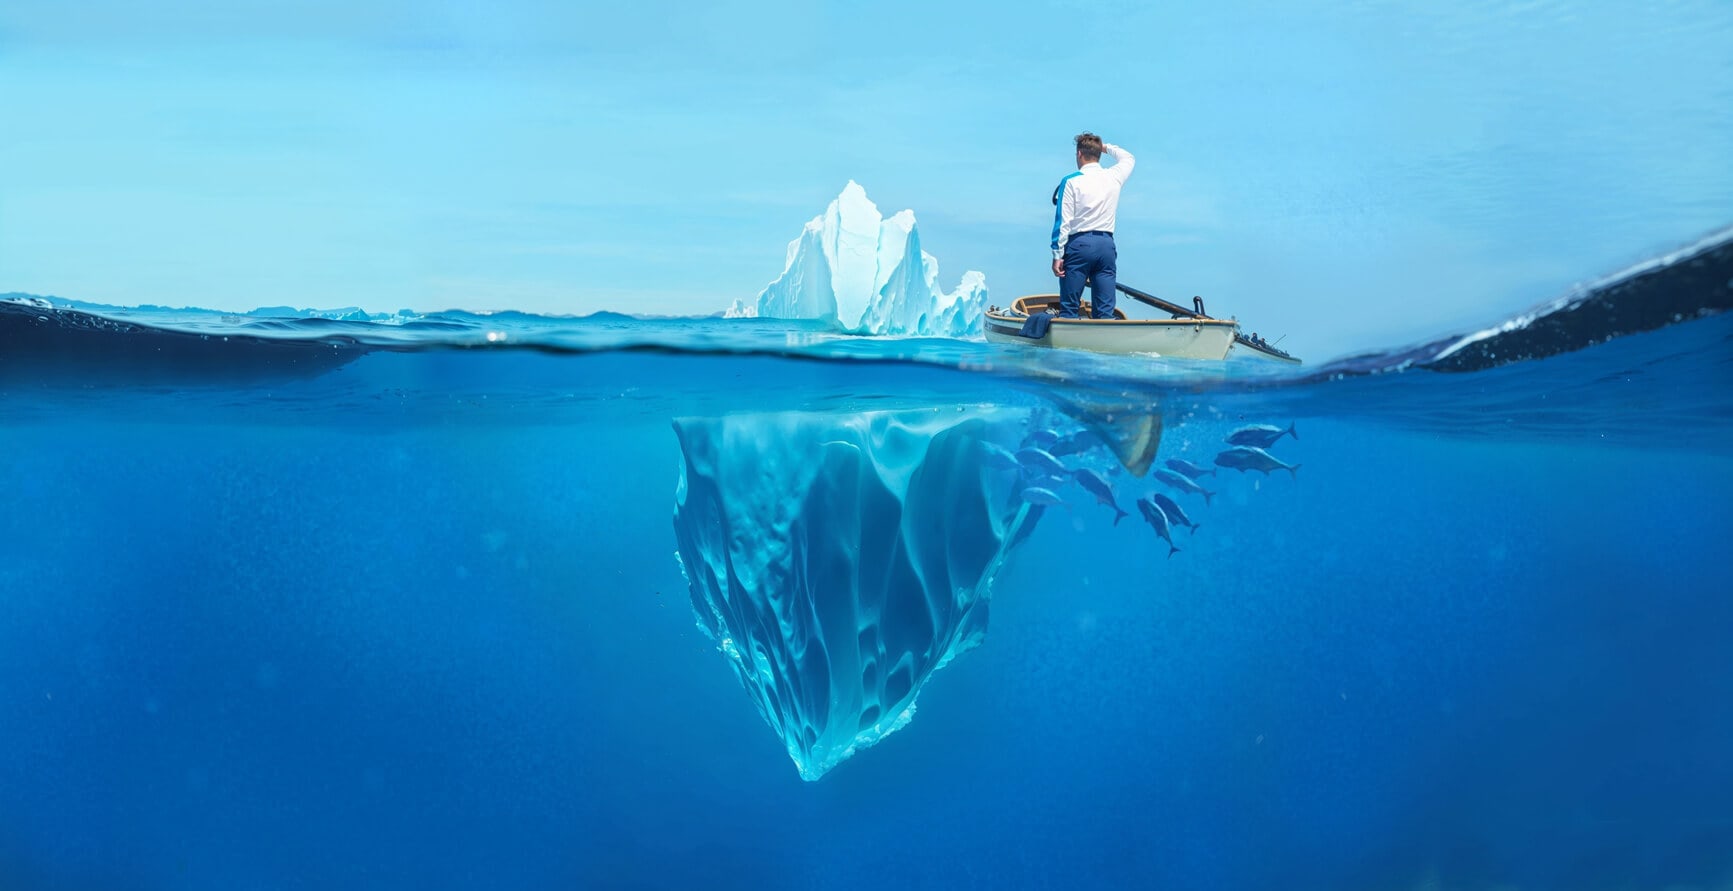 Ein Mann auf einem Ruderboot sichtet die Spitze eines Eisbergs. Er fragt sich wer besser geeignet ist, wenn es Website gegen Theme heisst?